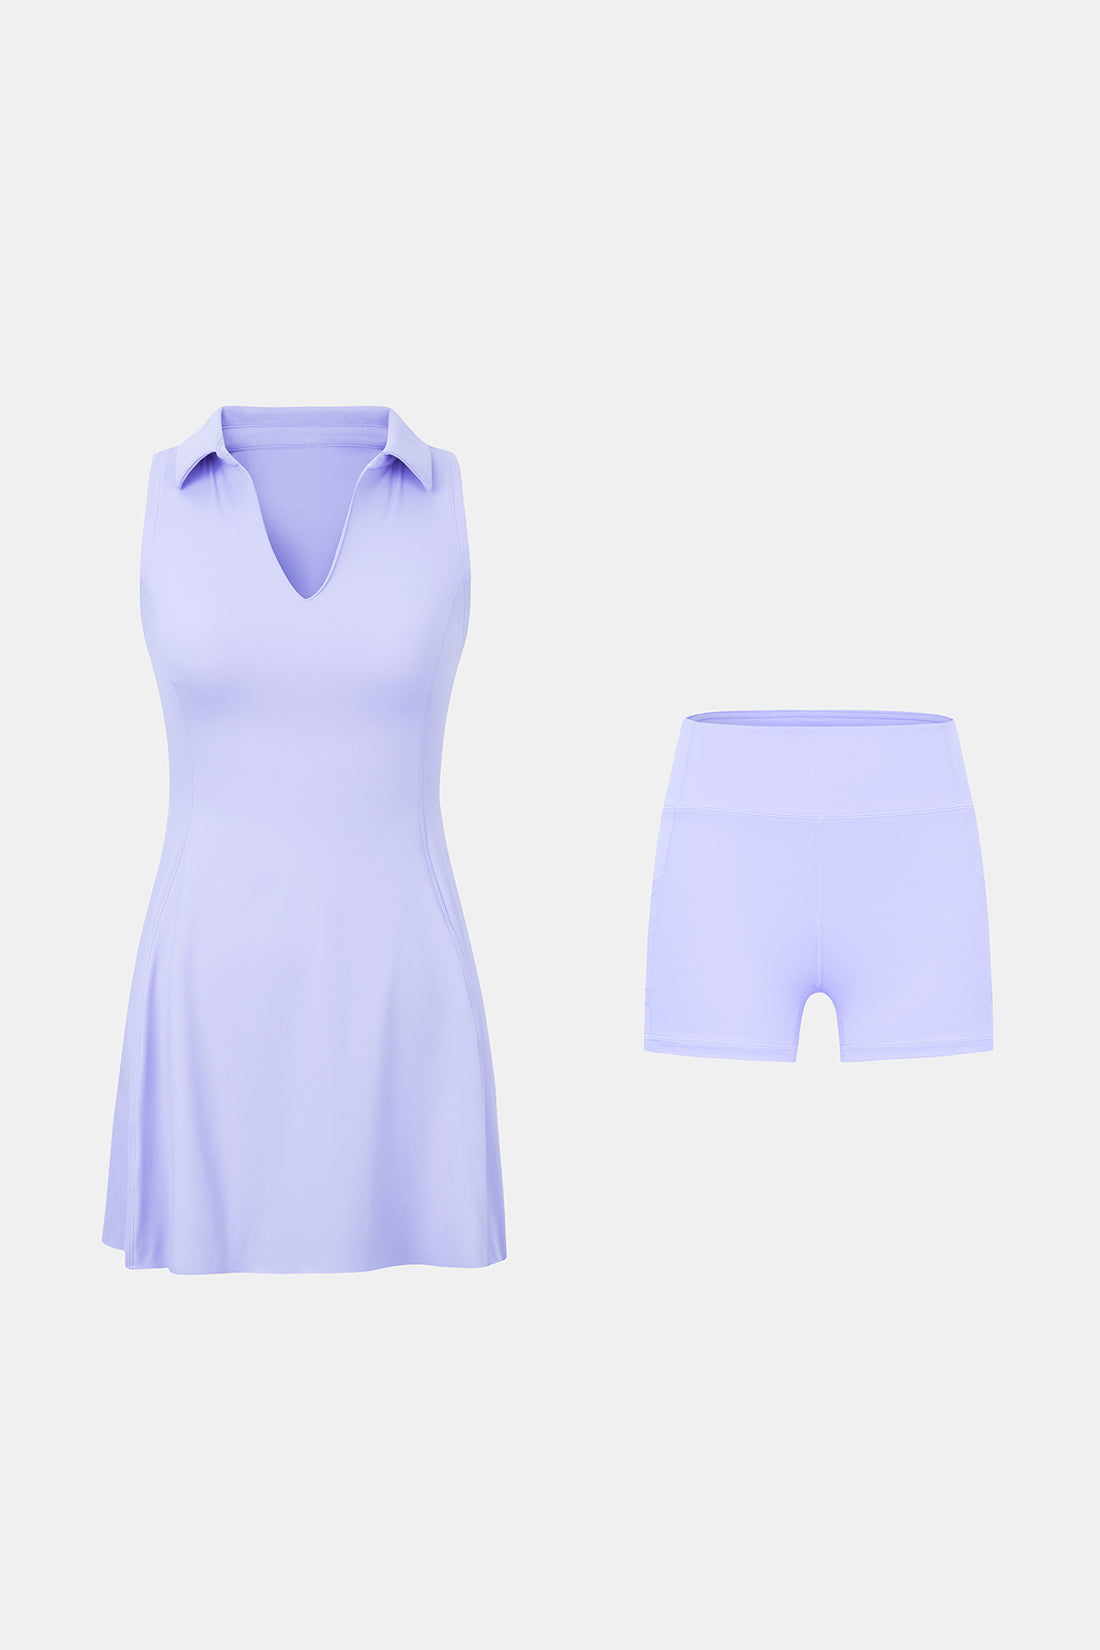 Polo Collar Tennis Dress with V-Neck